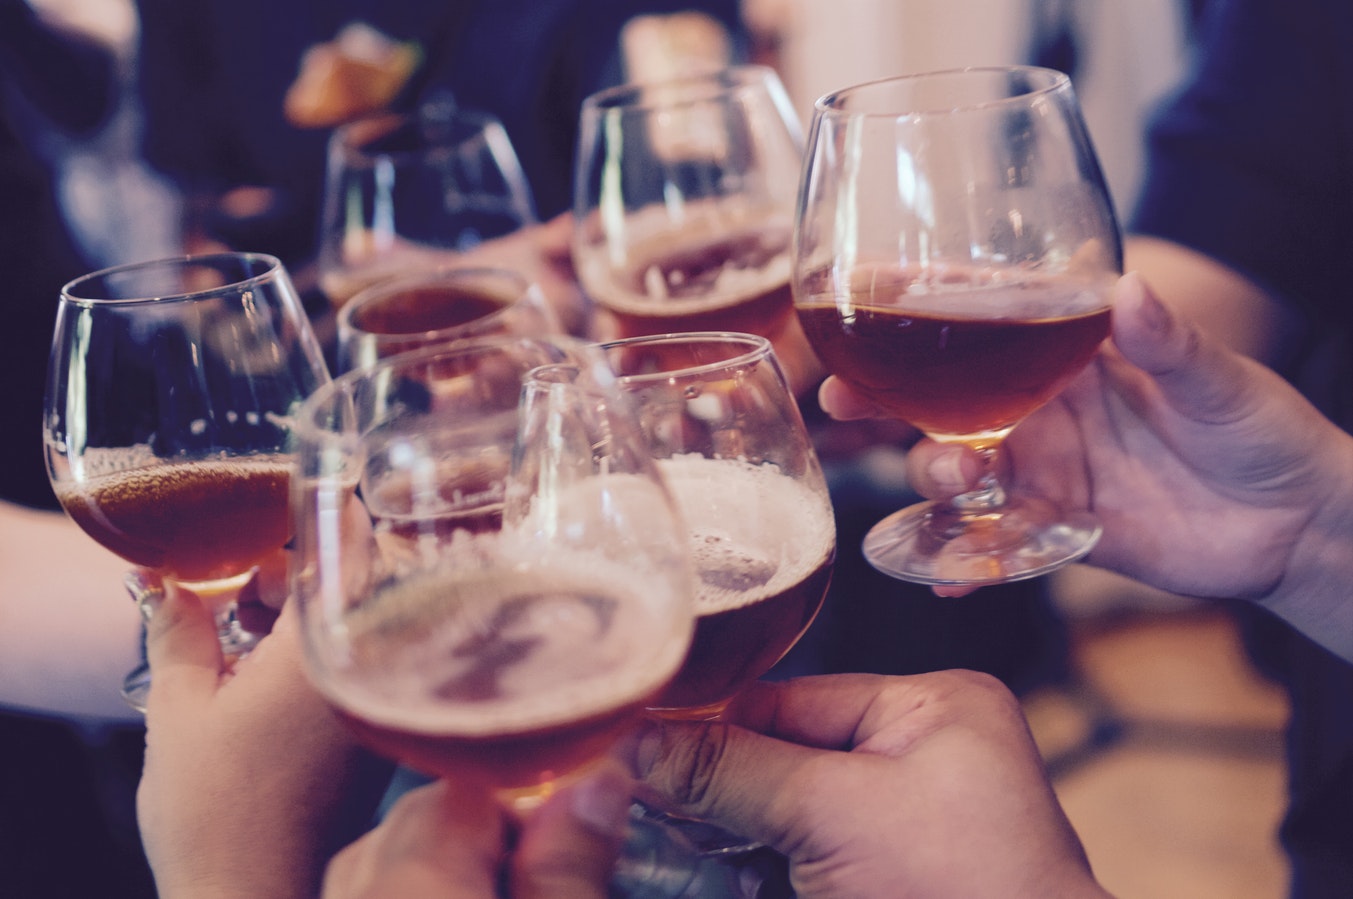 Bebida sintética vai permitir a ‘diversão’ do álcool, mas sem ressaca